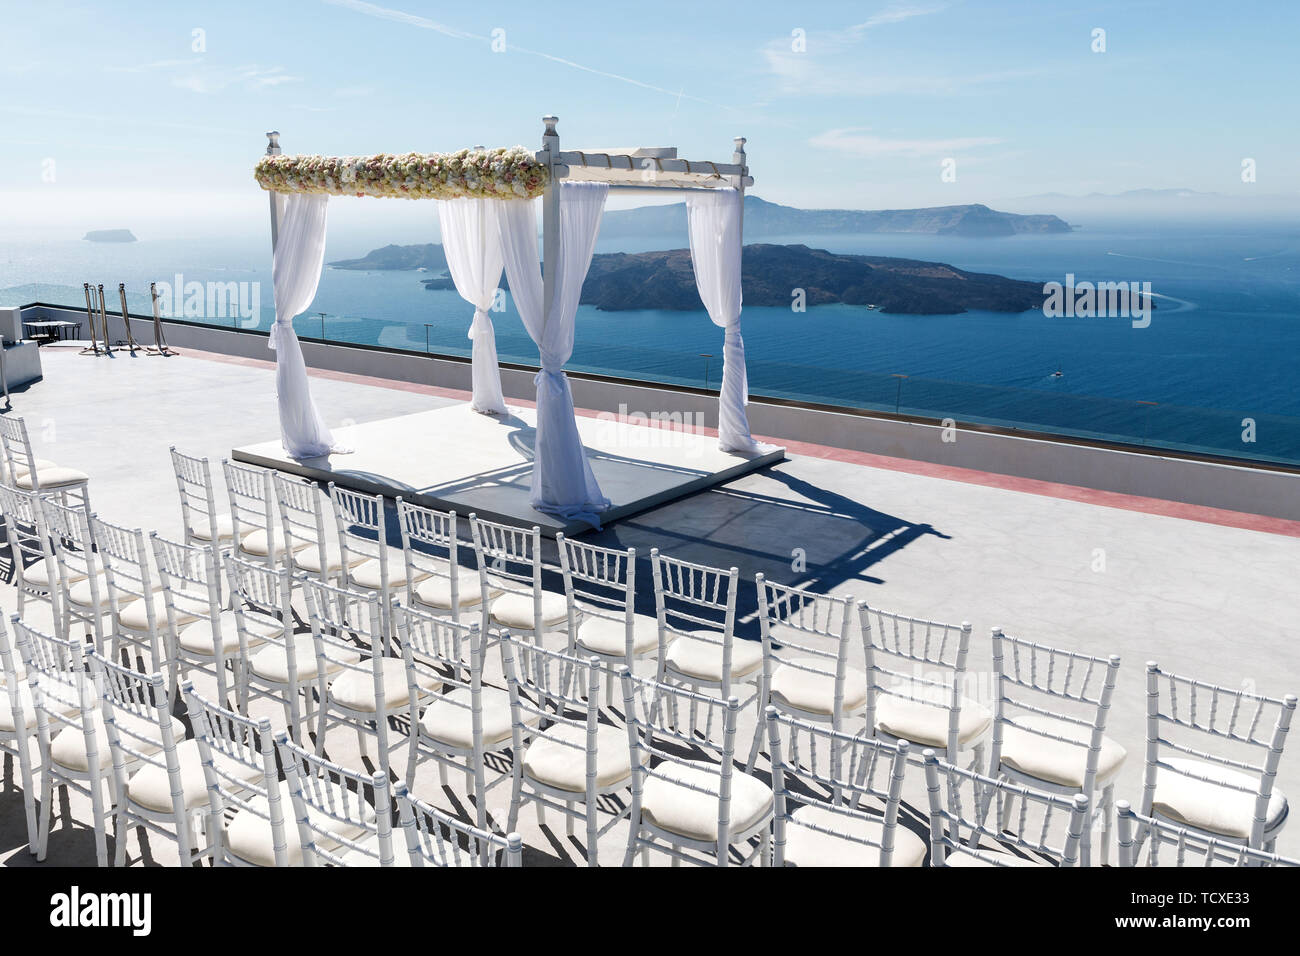 Magnifiquement arrangé pour une cérémonie de mariage sur la côte grecque. Des vacances romantiques au bord de la mer Banque D'Images